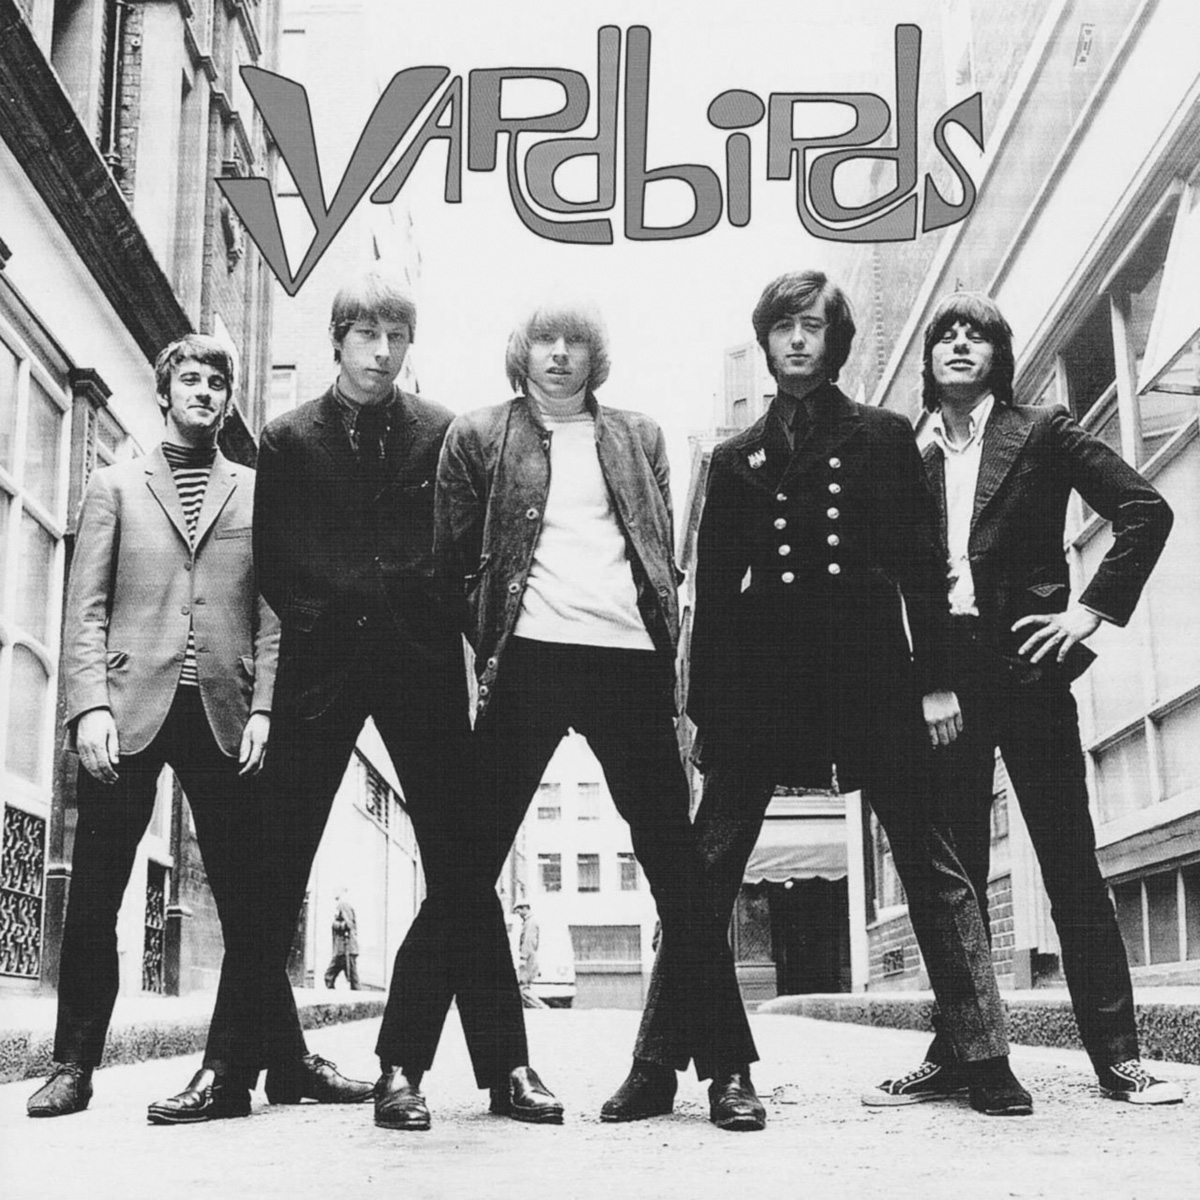 Yardbirds For Your Love